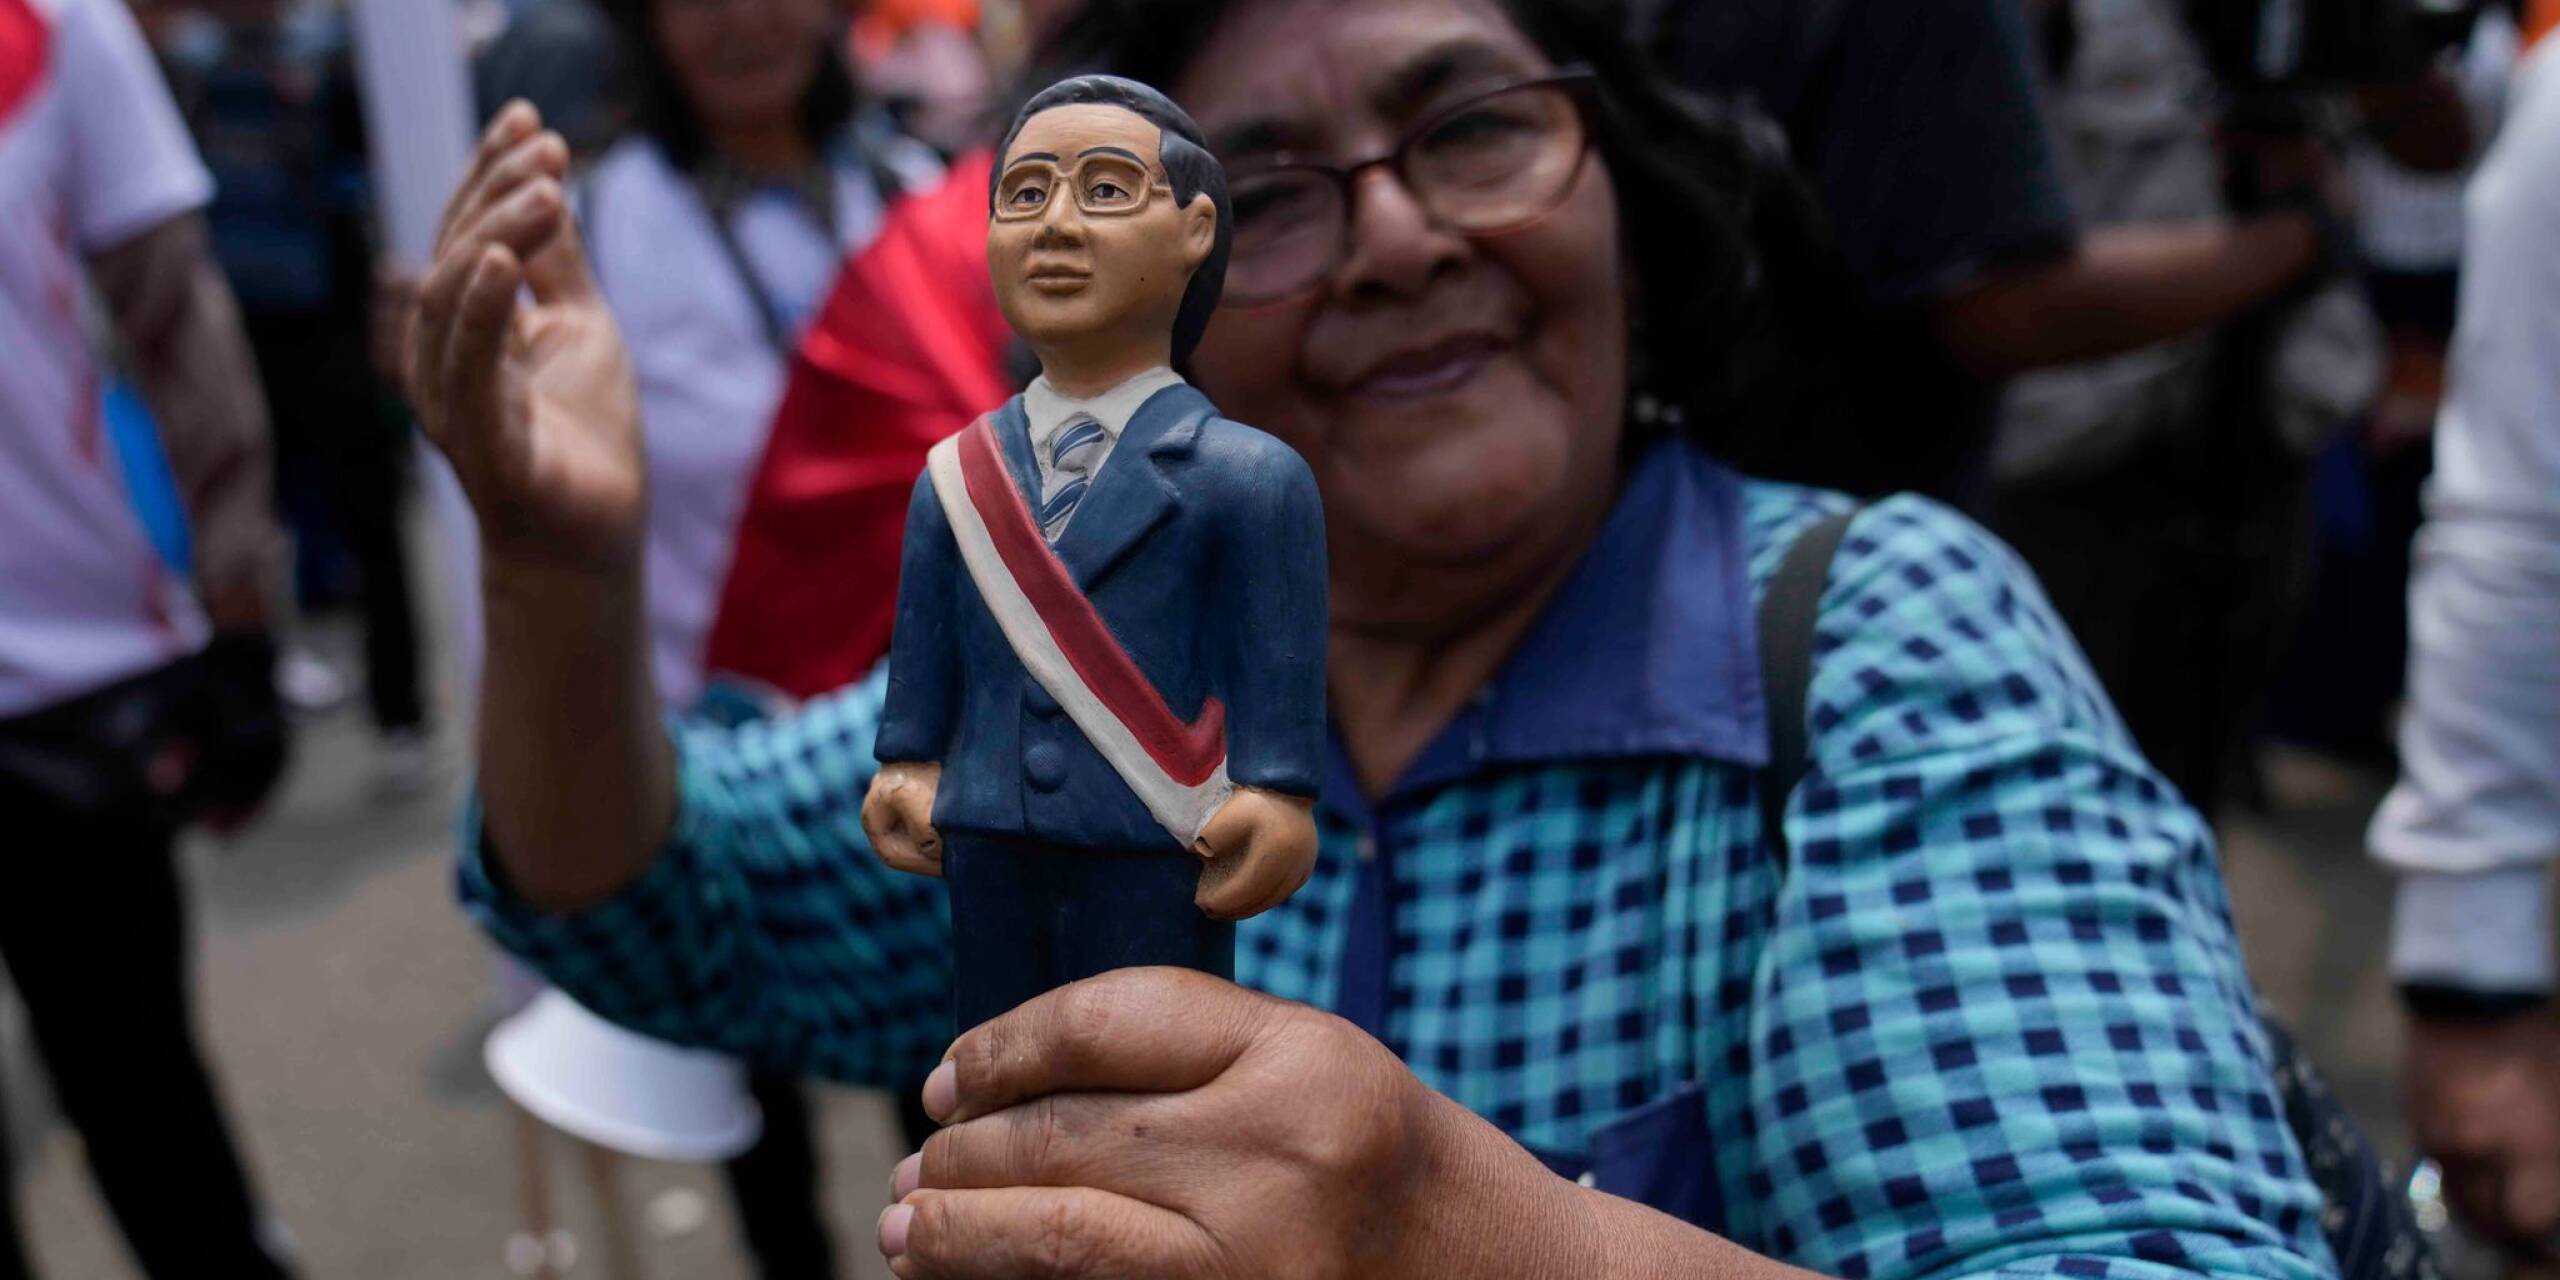 Freude bei einer Anhängerin des ehemaligen peruanischen Präsidenten Alberto Fujimori. Nach einer Anordnung des Verfassungsgerichts ist der wegen Menschenrechtsverletzungen verurteilte 85-Jährige aus der Haft entlassen worden.